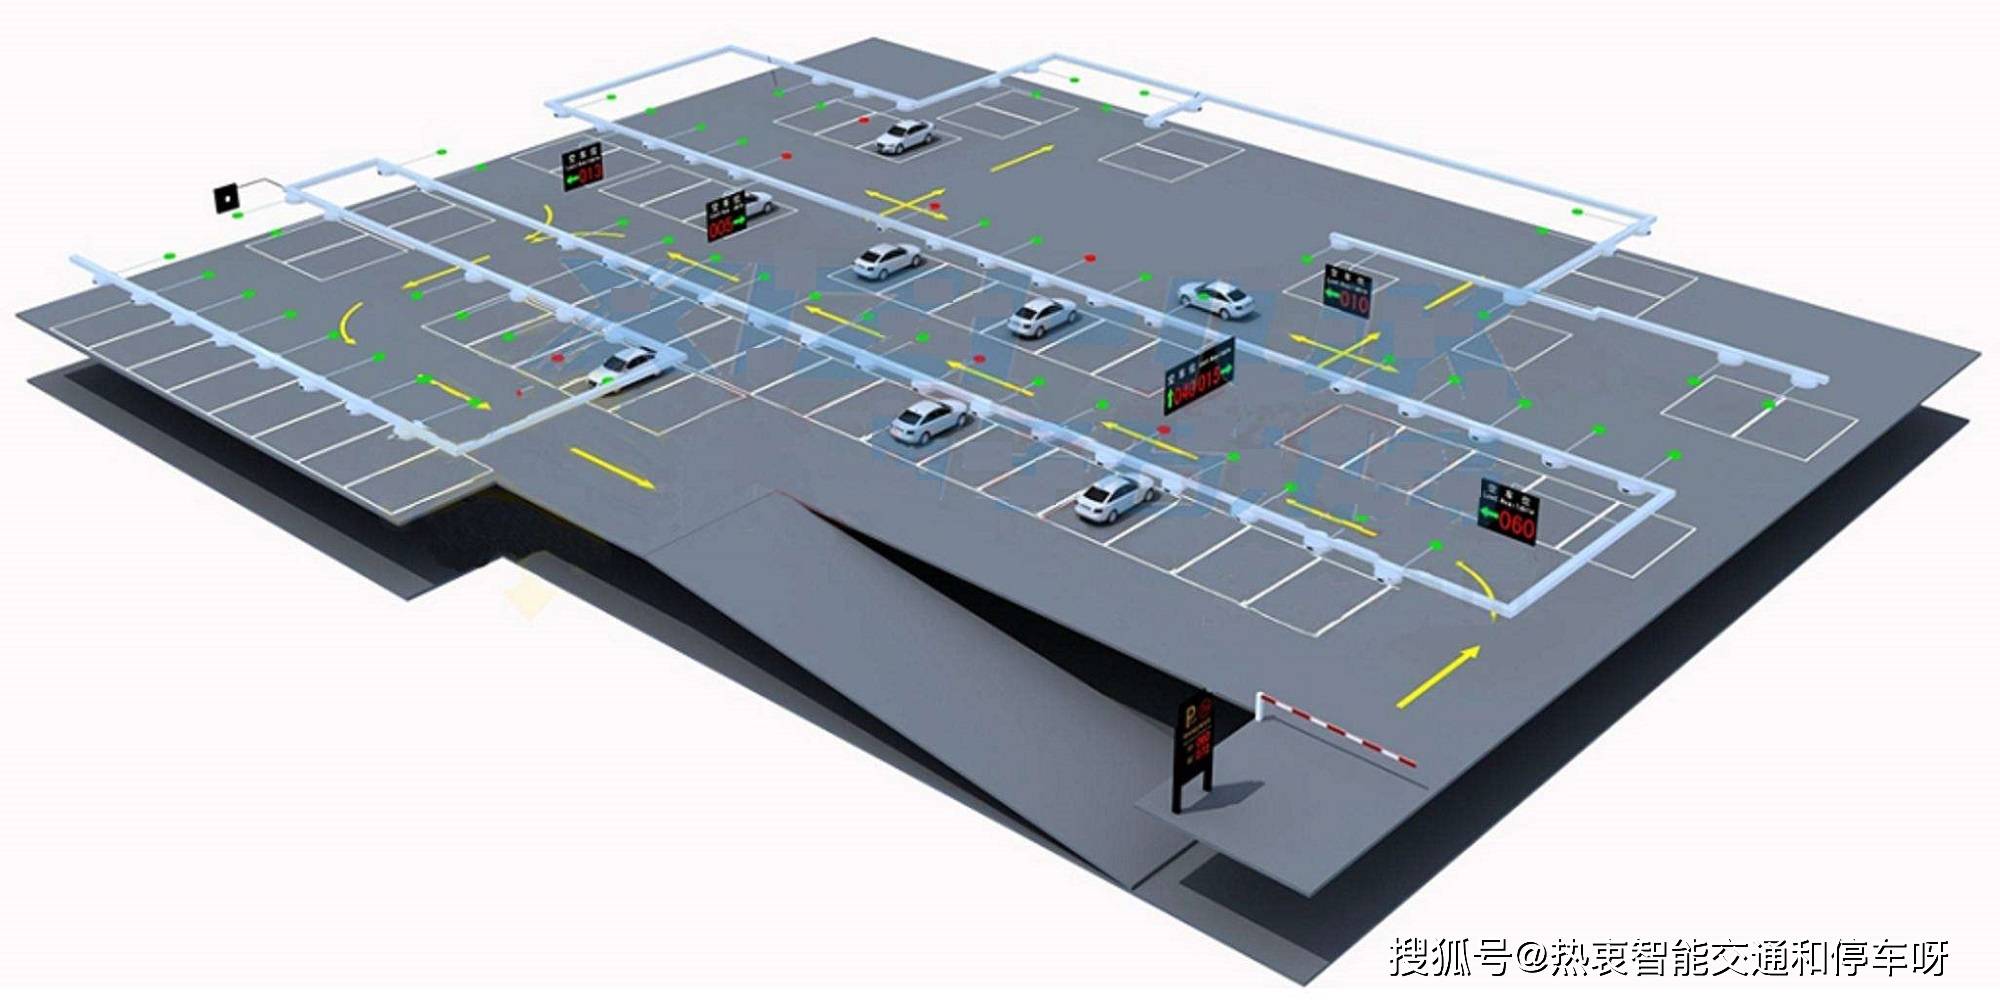 不容错过的停车场管理系统知识!_手机搜狐网